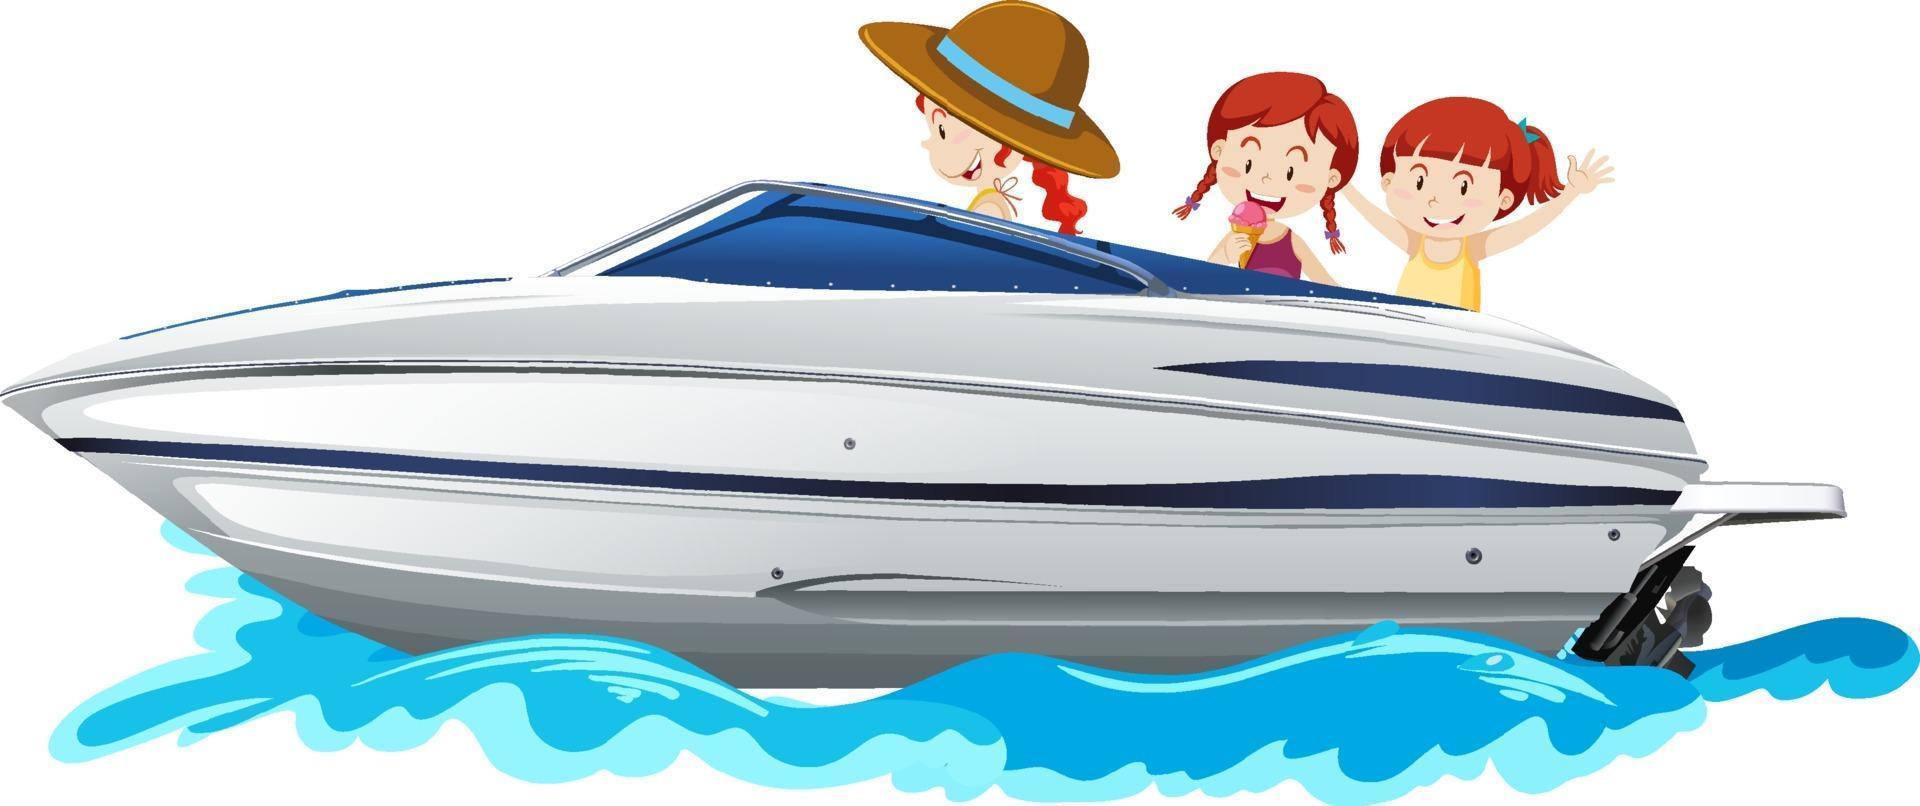 Kinder, die auf einem Schnellboot auf weißem Hintergrund stehen vektor